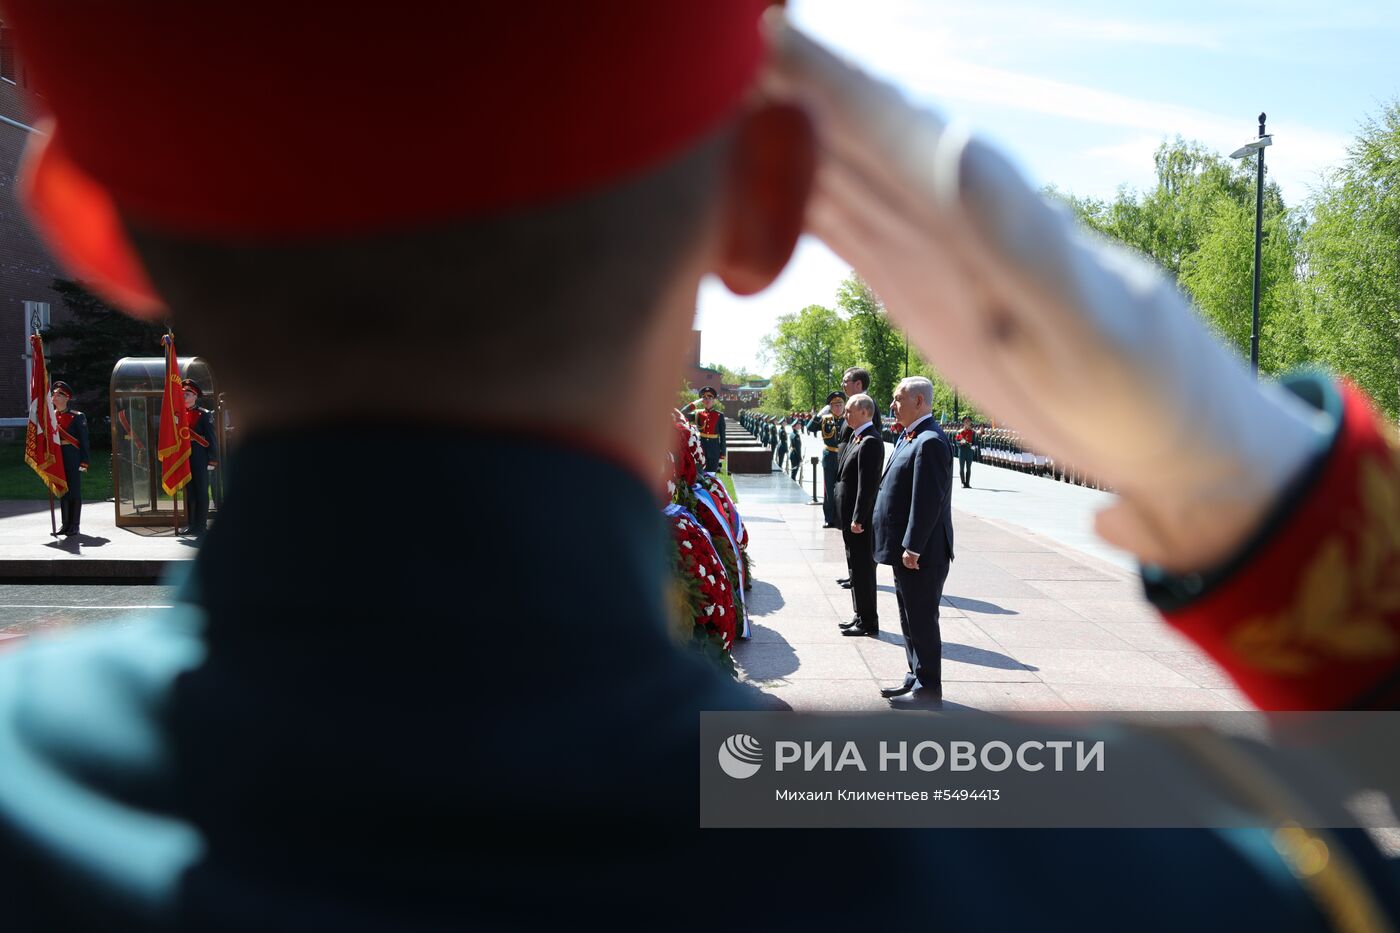 Президент РФ В. Путин и премьер-министр РФ Д. Медведев на церемонии возложения цветов к Могиле Неизвестного солдата